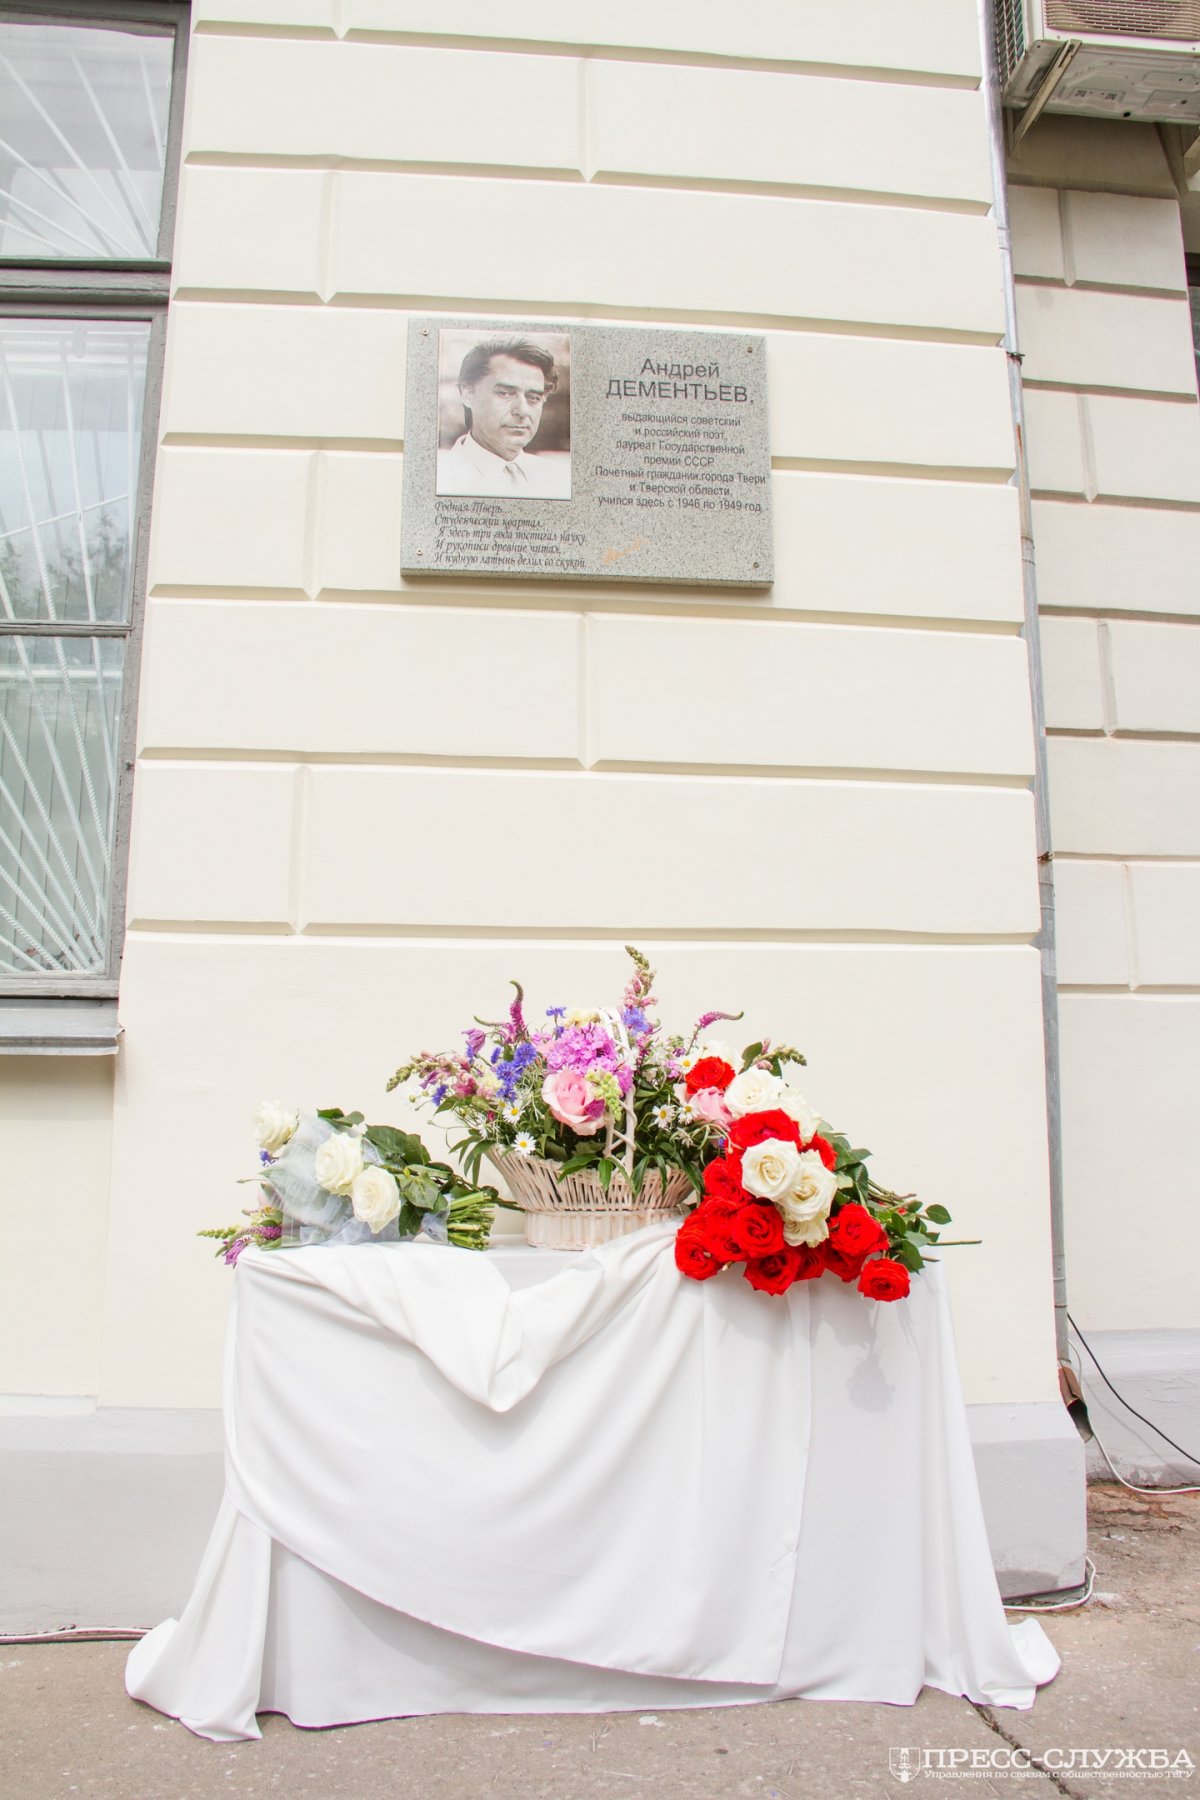 В ТвГУ прошло торжественное открытие мемориальной доски Андрею Дементьеву на здании ректората